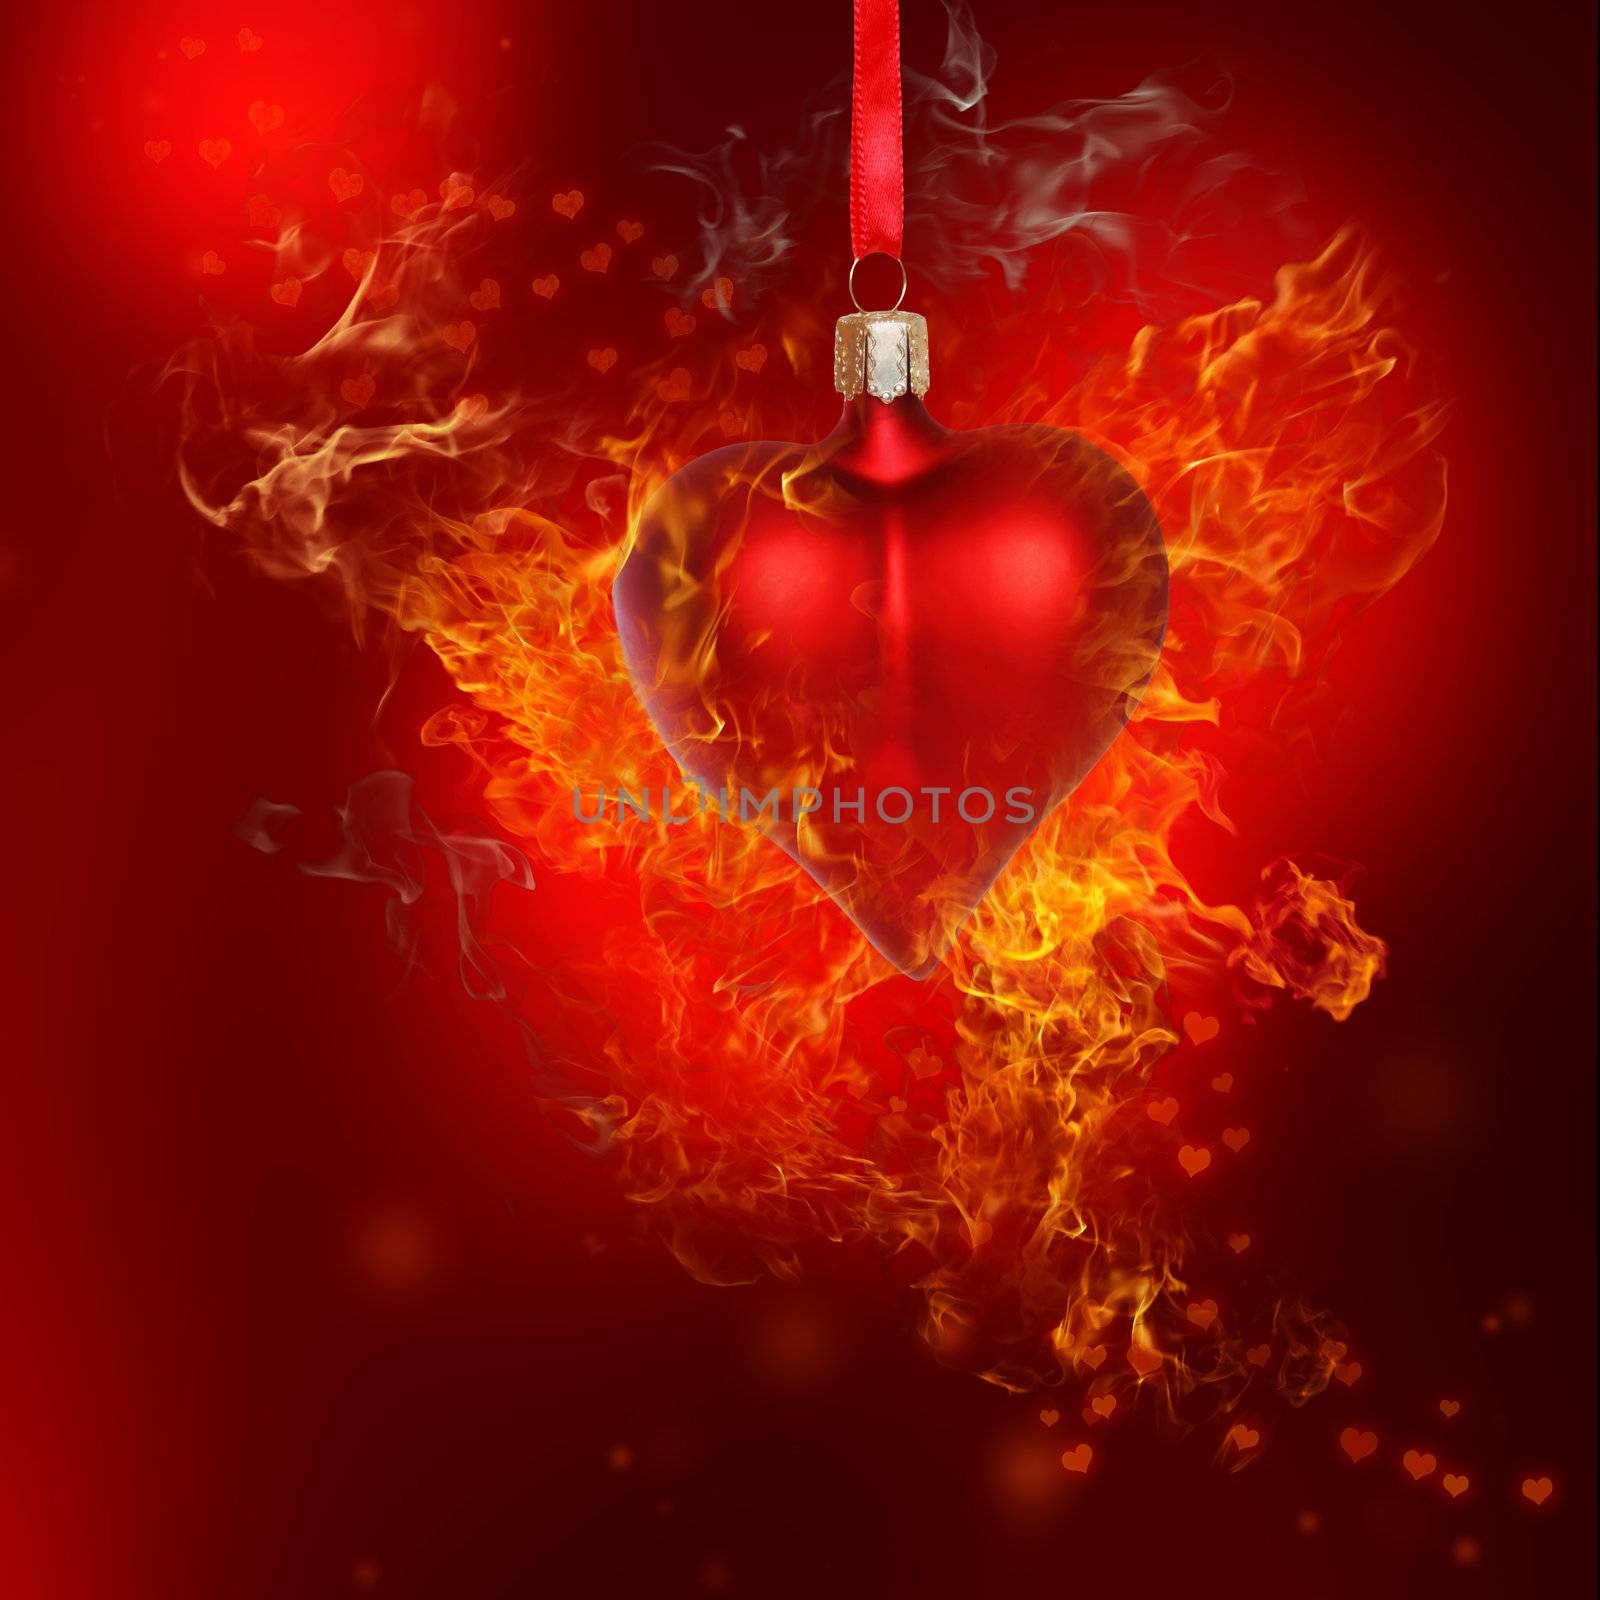 Fire Heart Bauble by melpomene